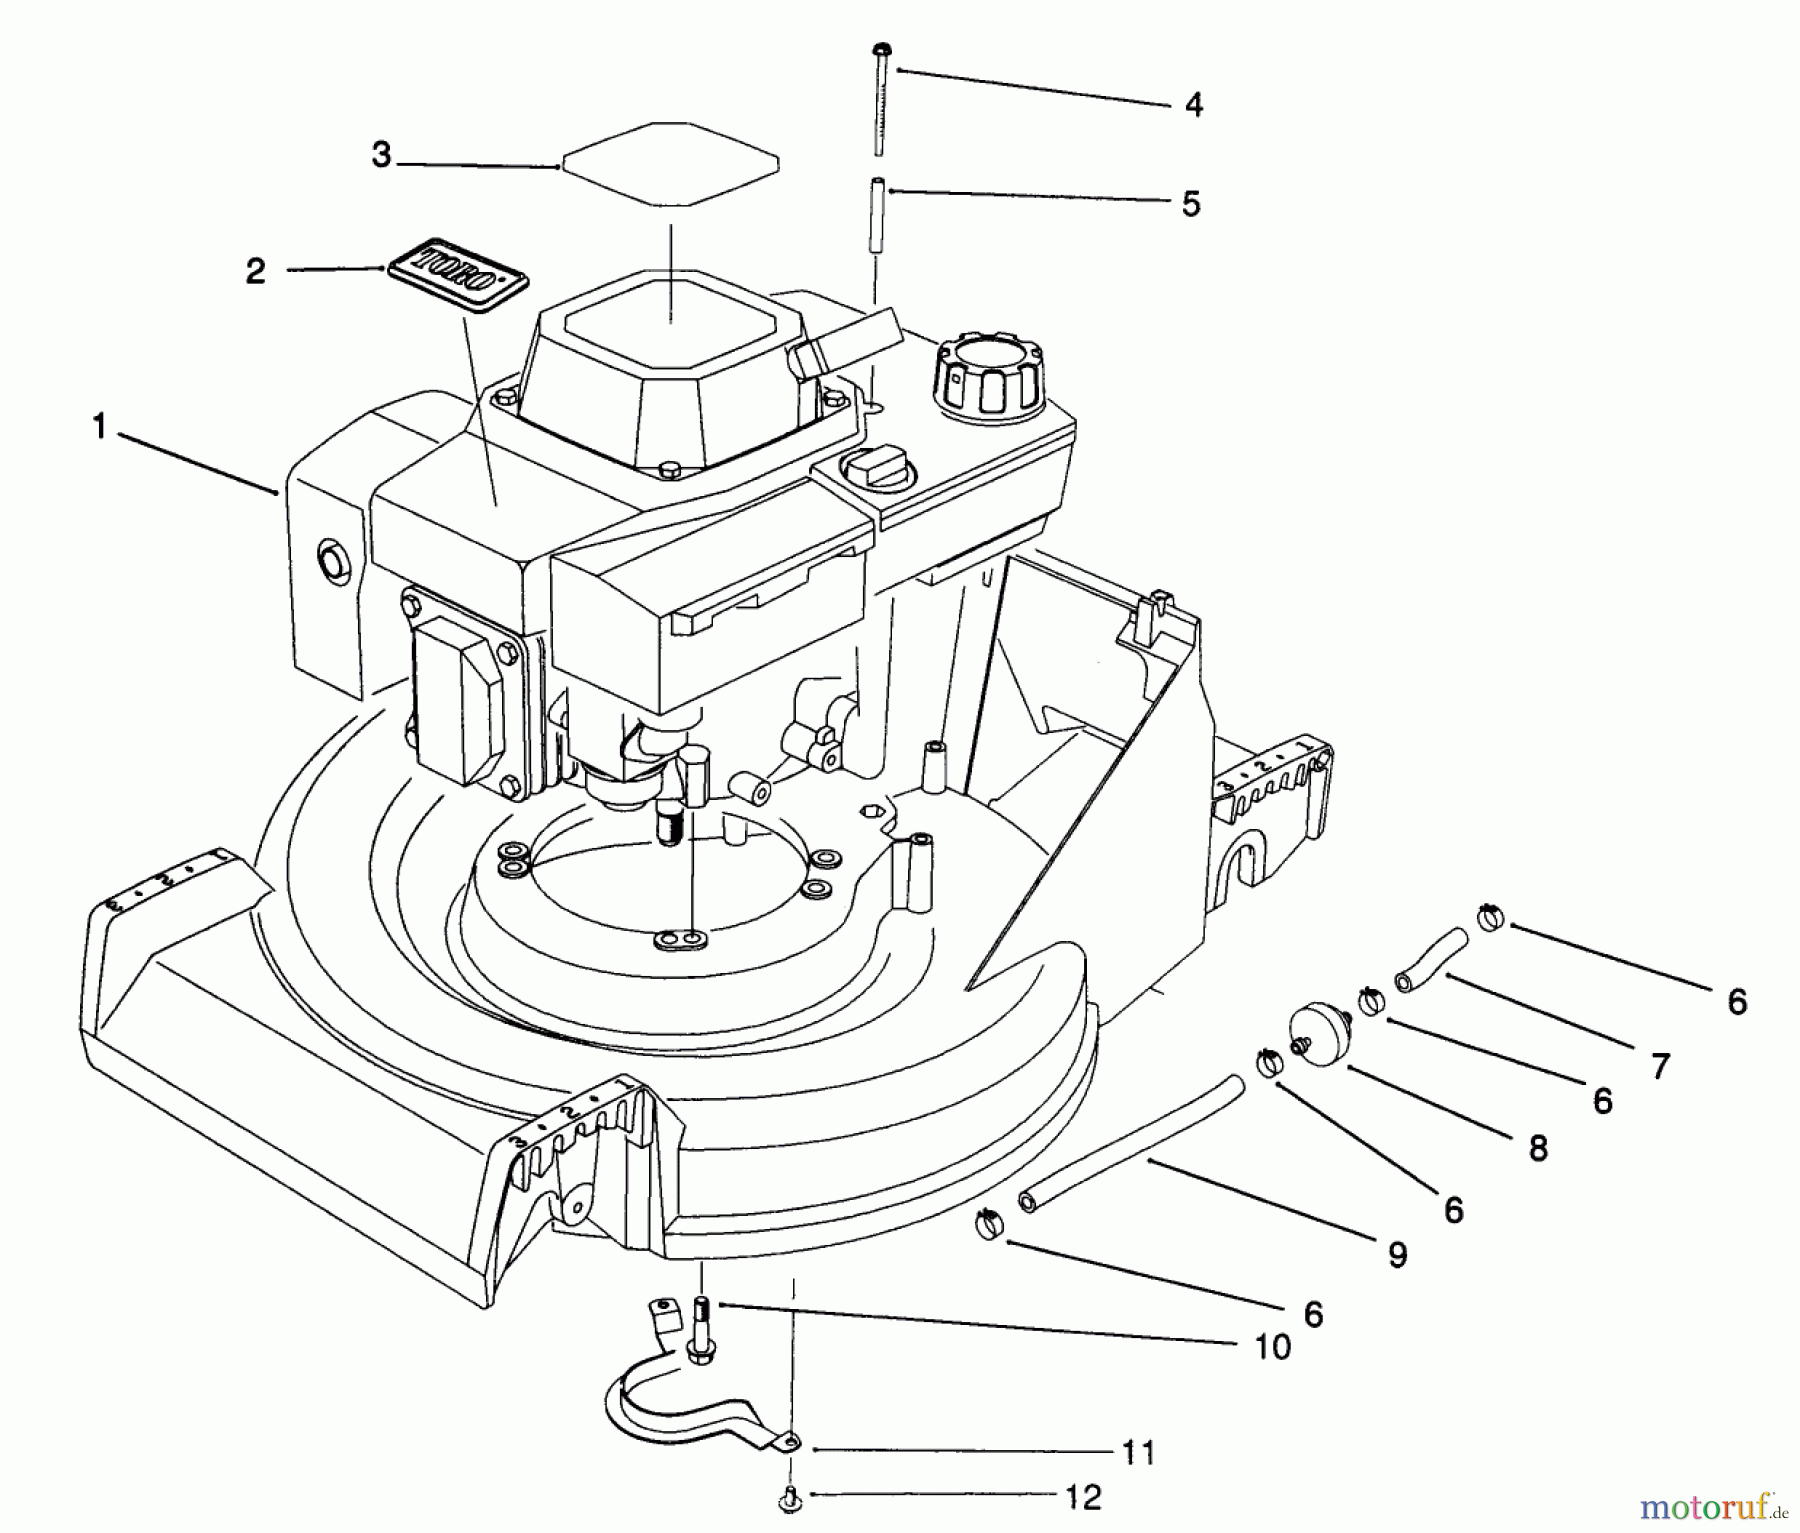  Toro Neu Mowers, Walk-Behind Seite 2 26621B - Toro Lawnmower, 1991 (1000001-1999999) ENGINE ASSEMBLY